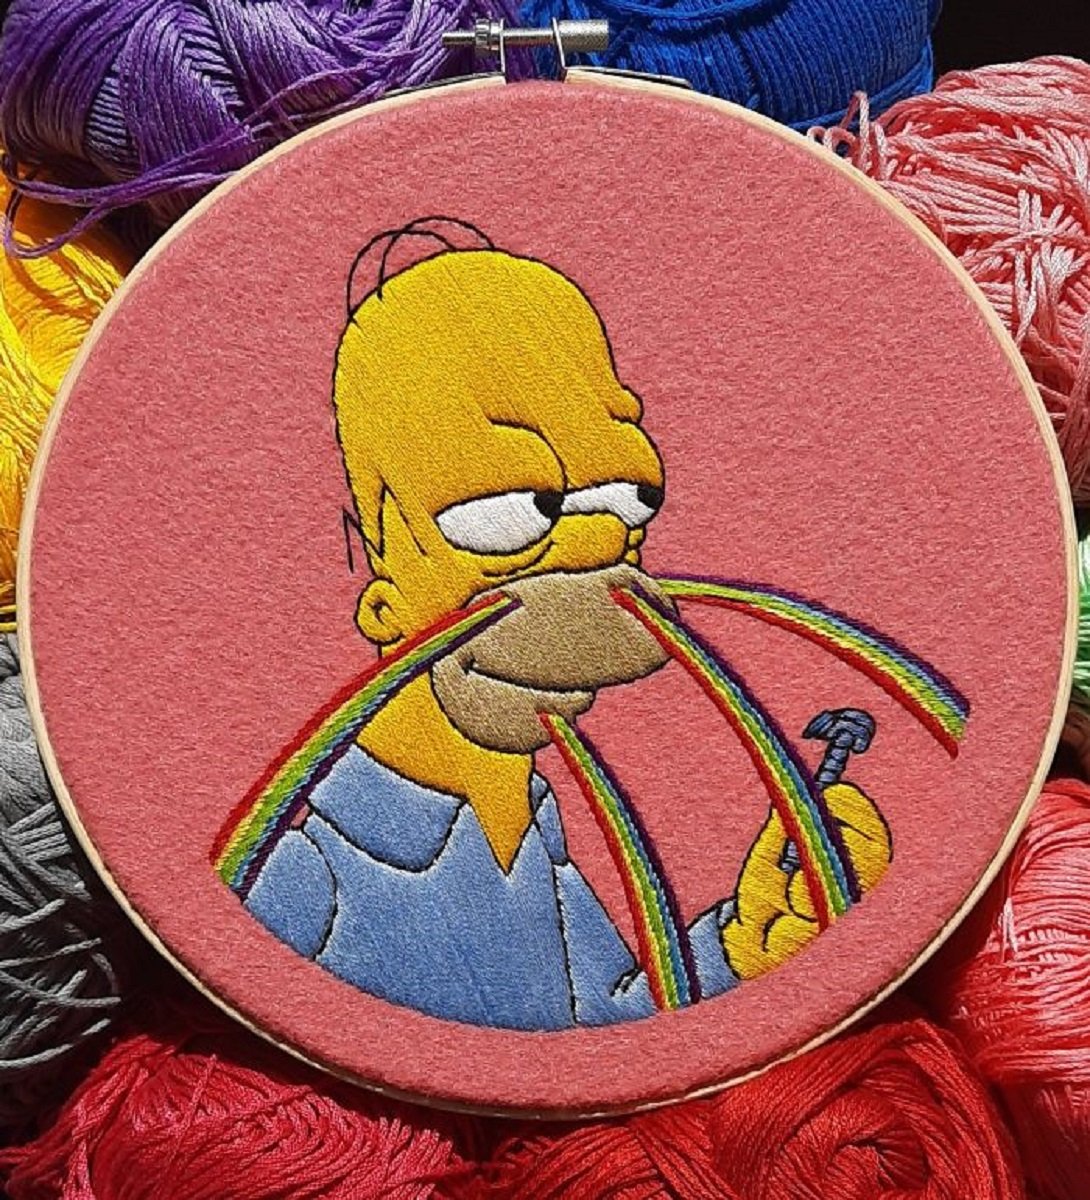 Artista Gabriela Martinez cria bordados de cenas de Os Simpsons 11